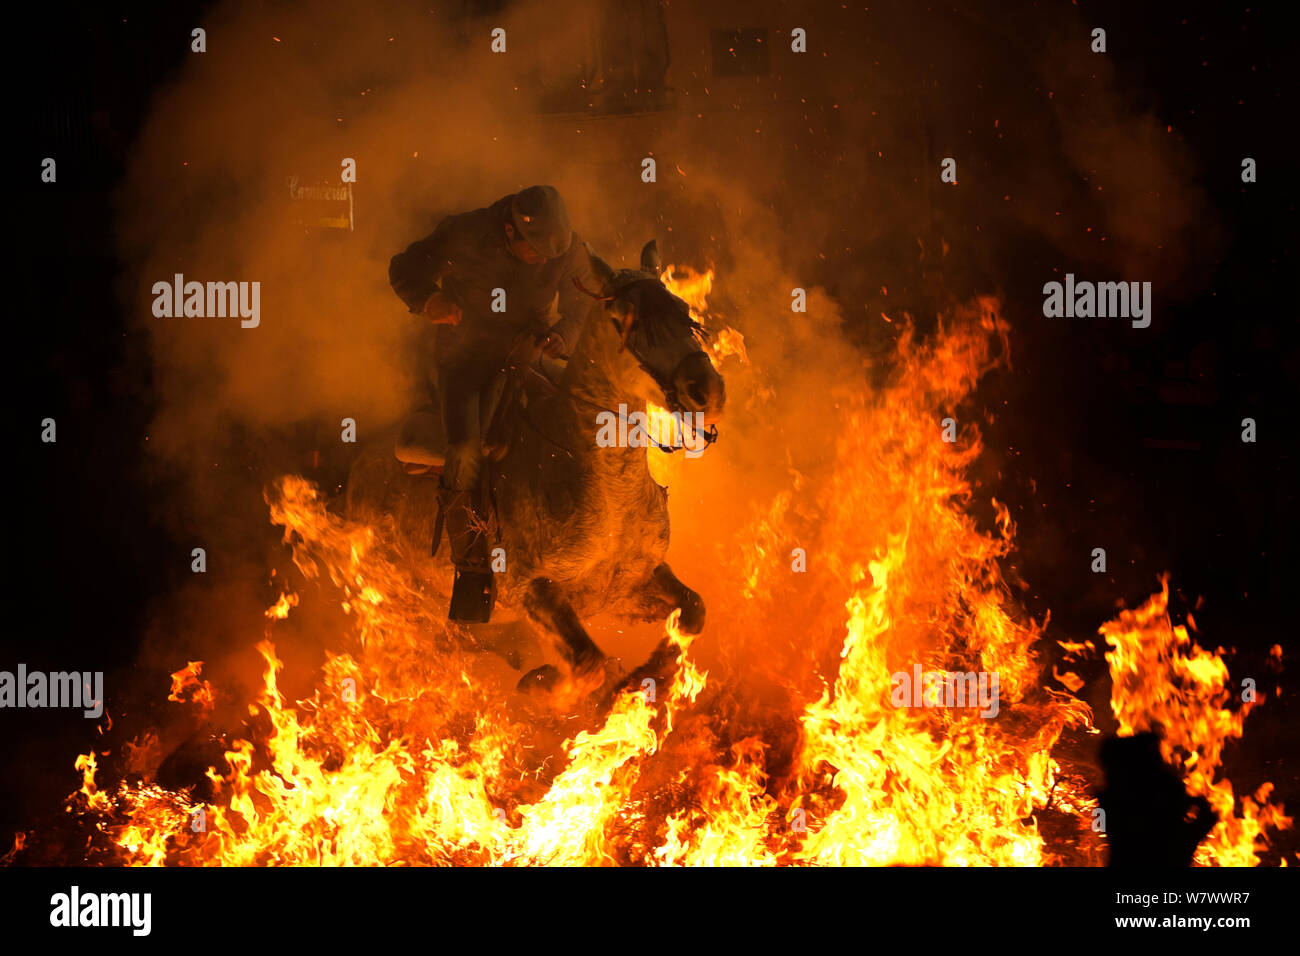 L'uomo saltare attraverso il fuoco per purificare il suo cavallo durante il festival Luminarias, tenuto ogni Gennaio in San Bartolome de Pinares, provincia di Avila, Castiglia e Leon, Spagna, Gennaio 2014. Foto Stock